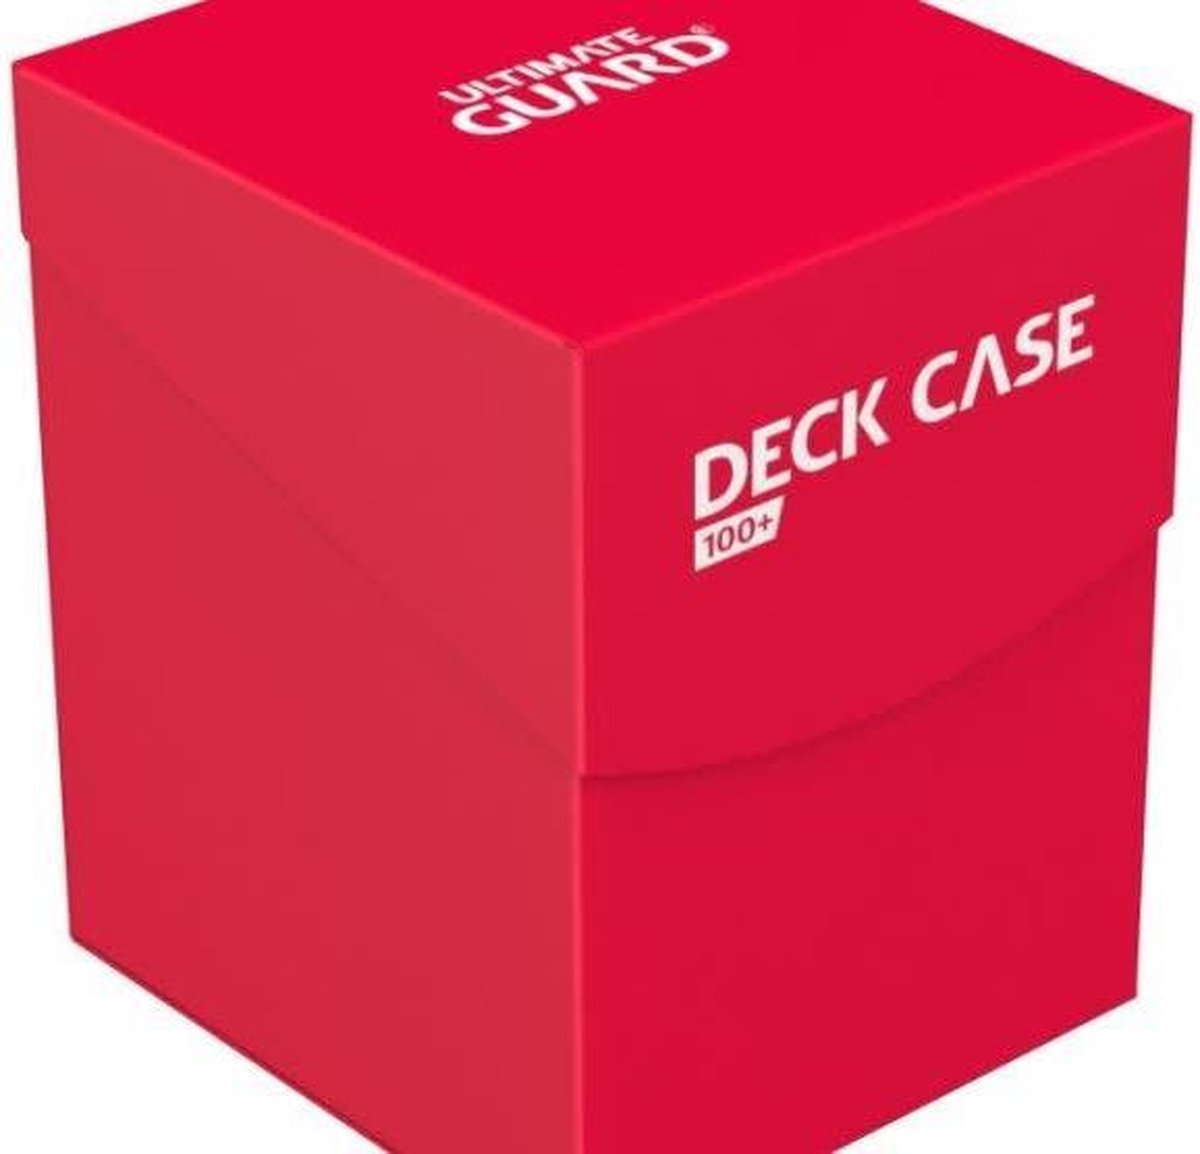 Deck Case 100+ red